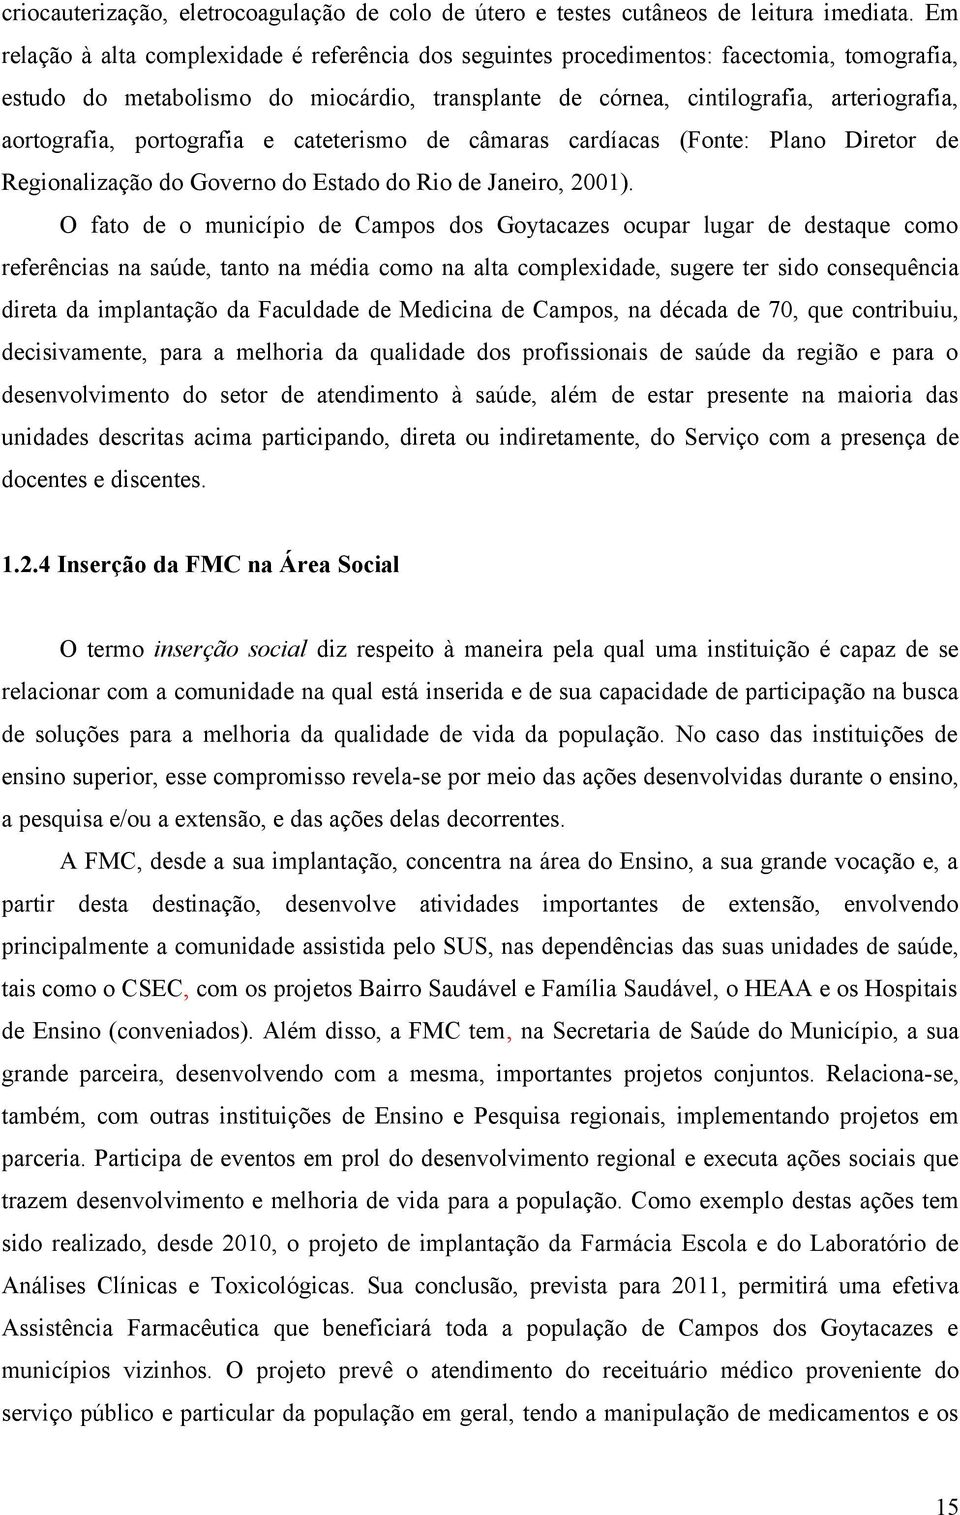 portografia e cateterismo de câmaras cardíacas (Fonte: Plano Diretor de Regionalização do Governo do Estado do Rio de Janeiro, 2001).